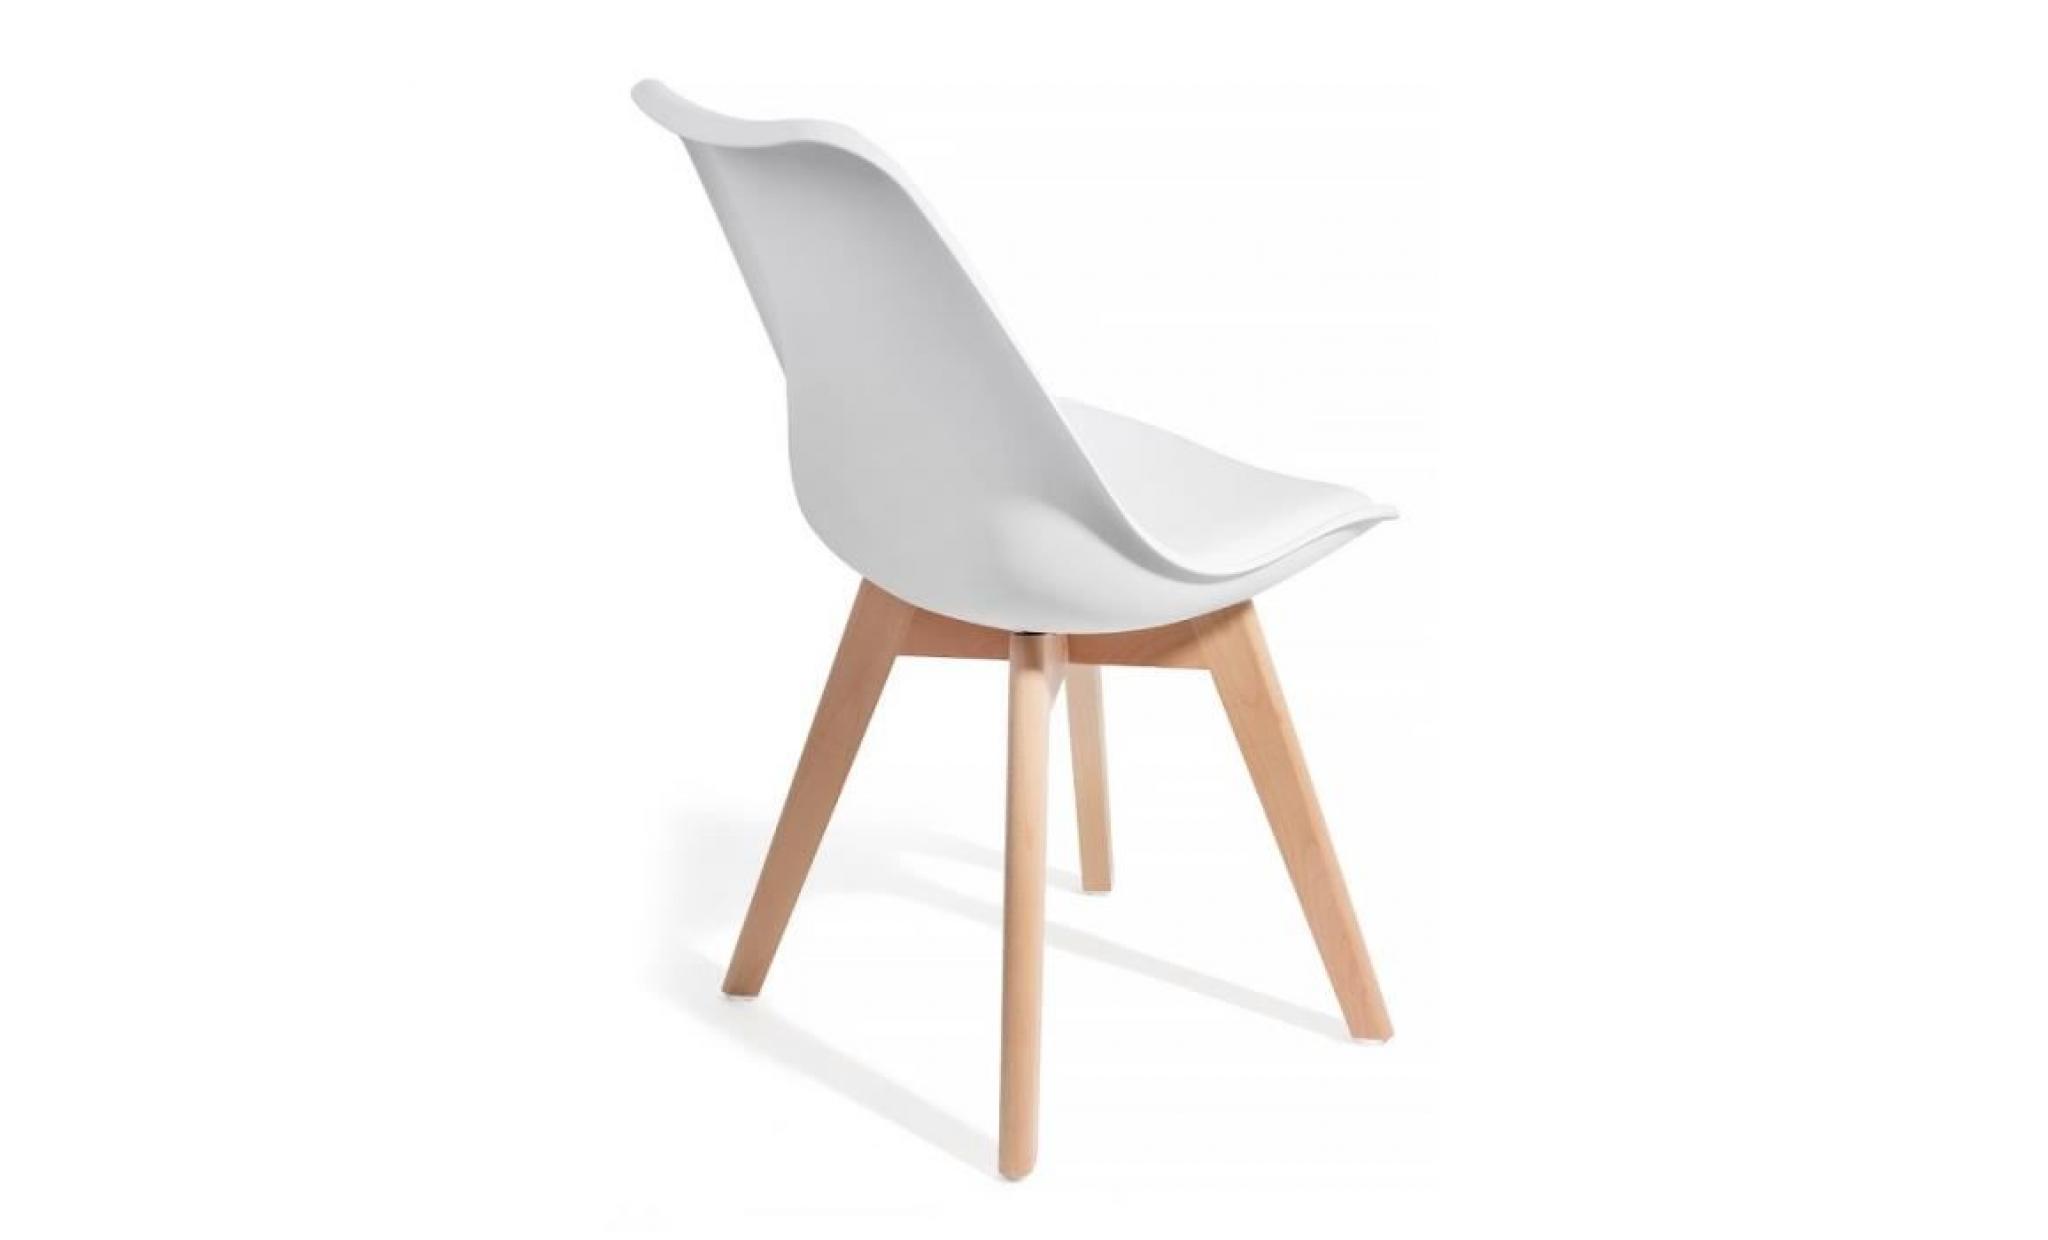 brekka noir lot de 4 chaises design contemporain nordique scandinave super qualité pas cher